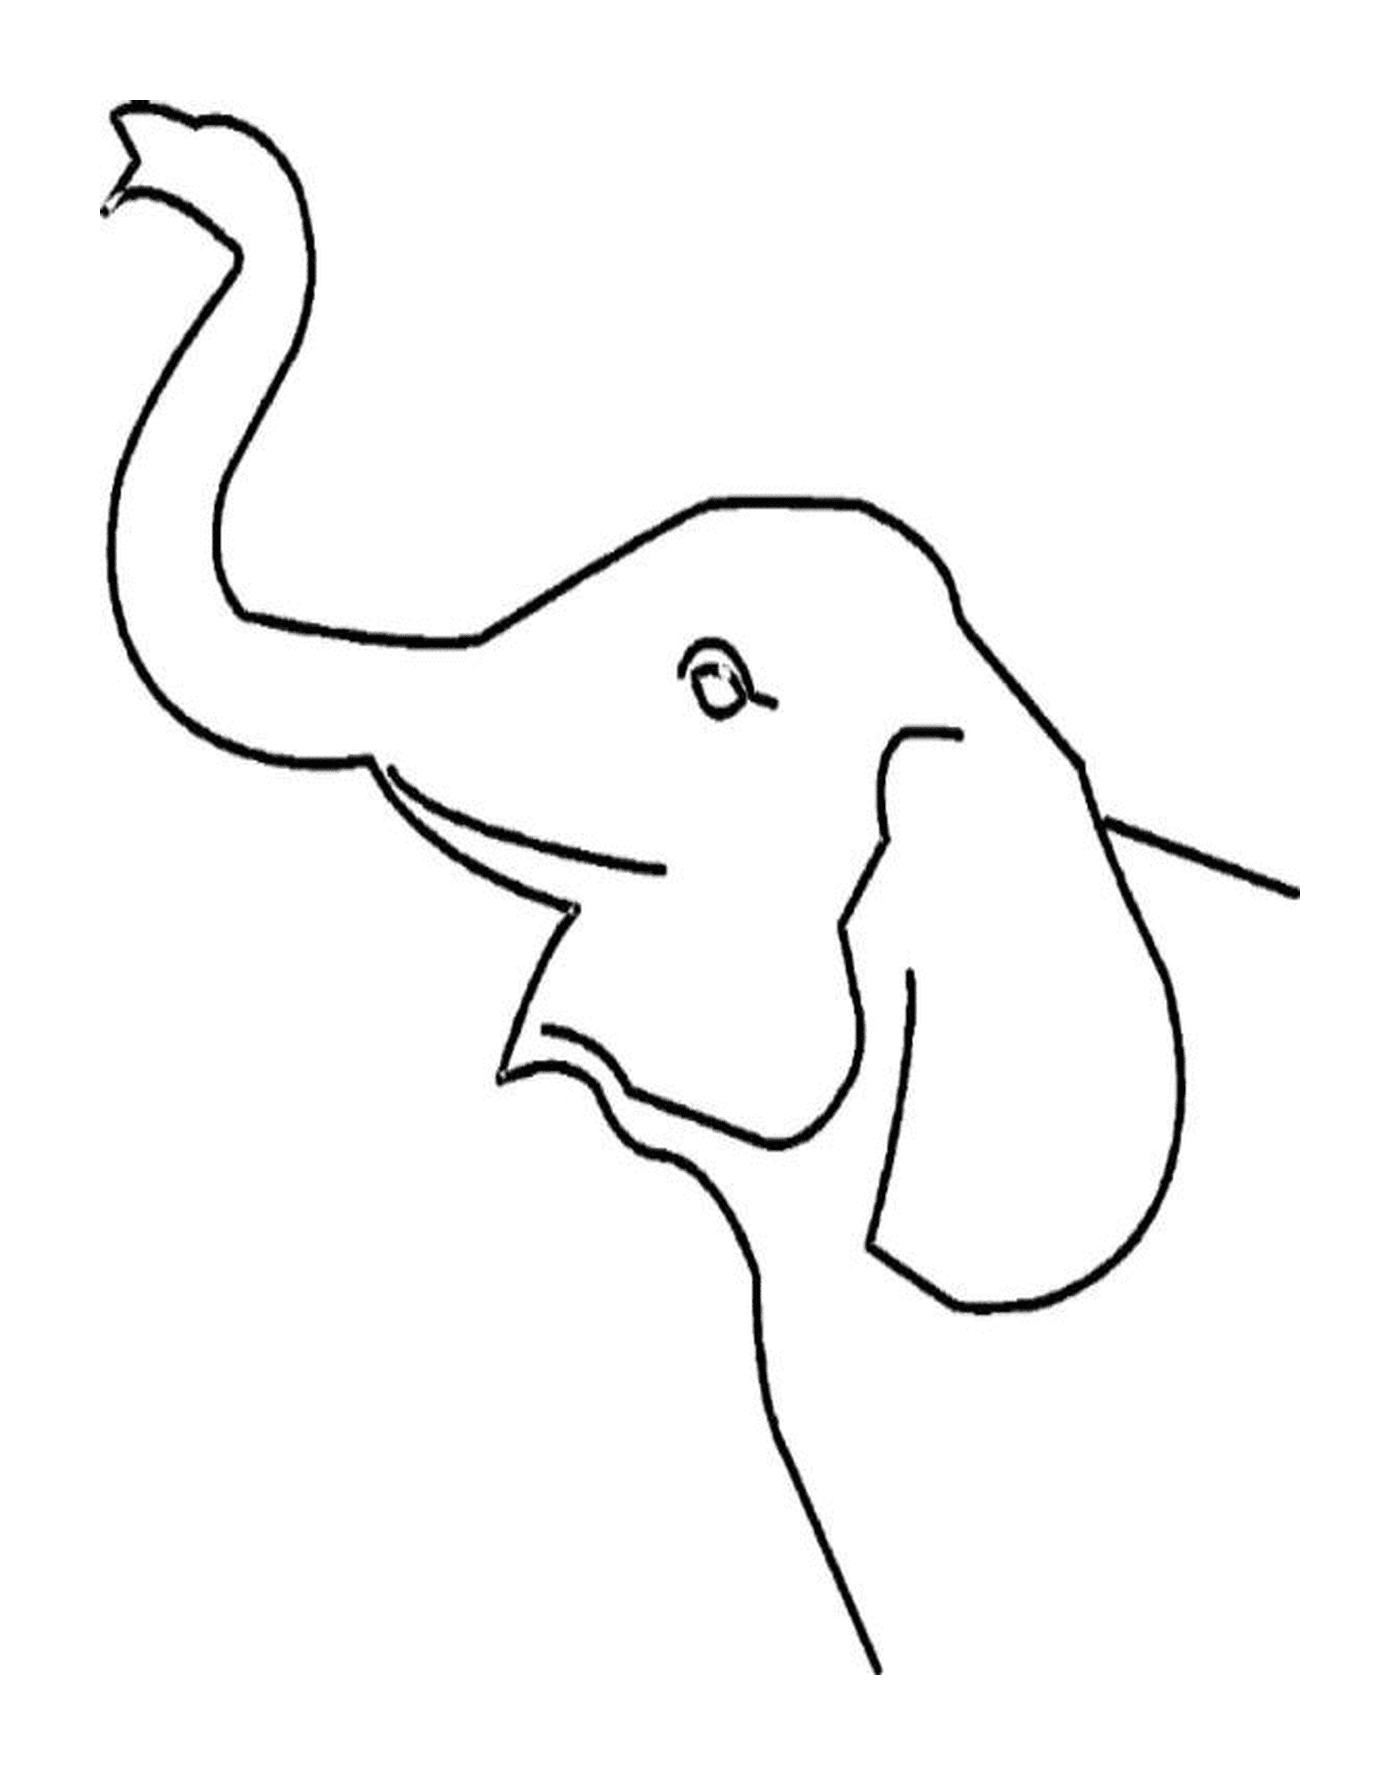  एक हाथी की जड़ उभर रही है 